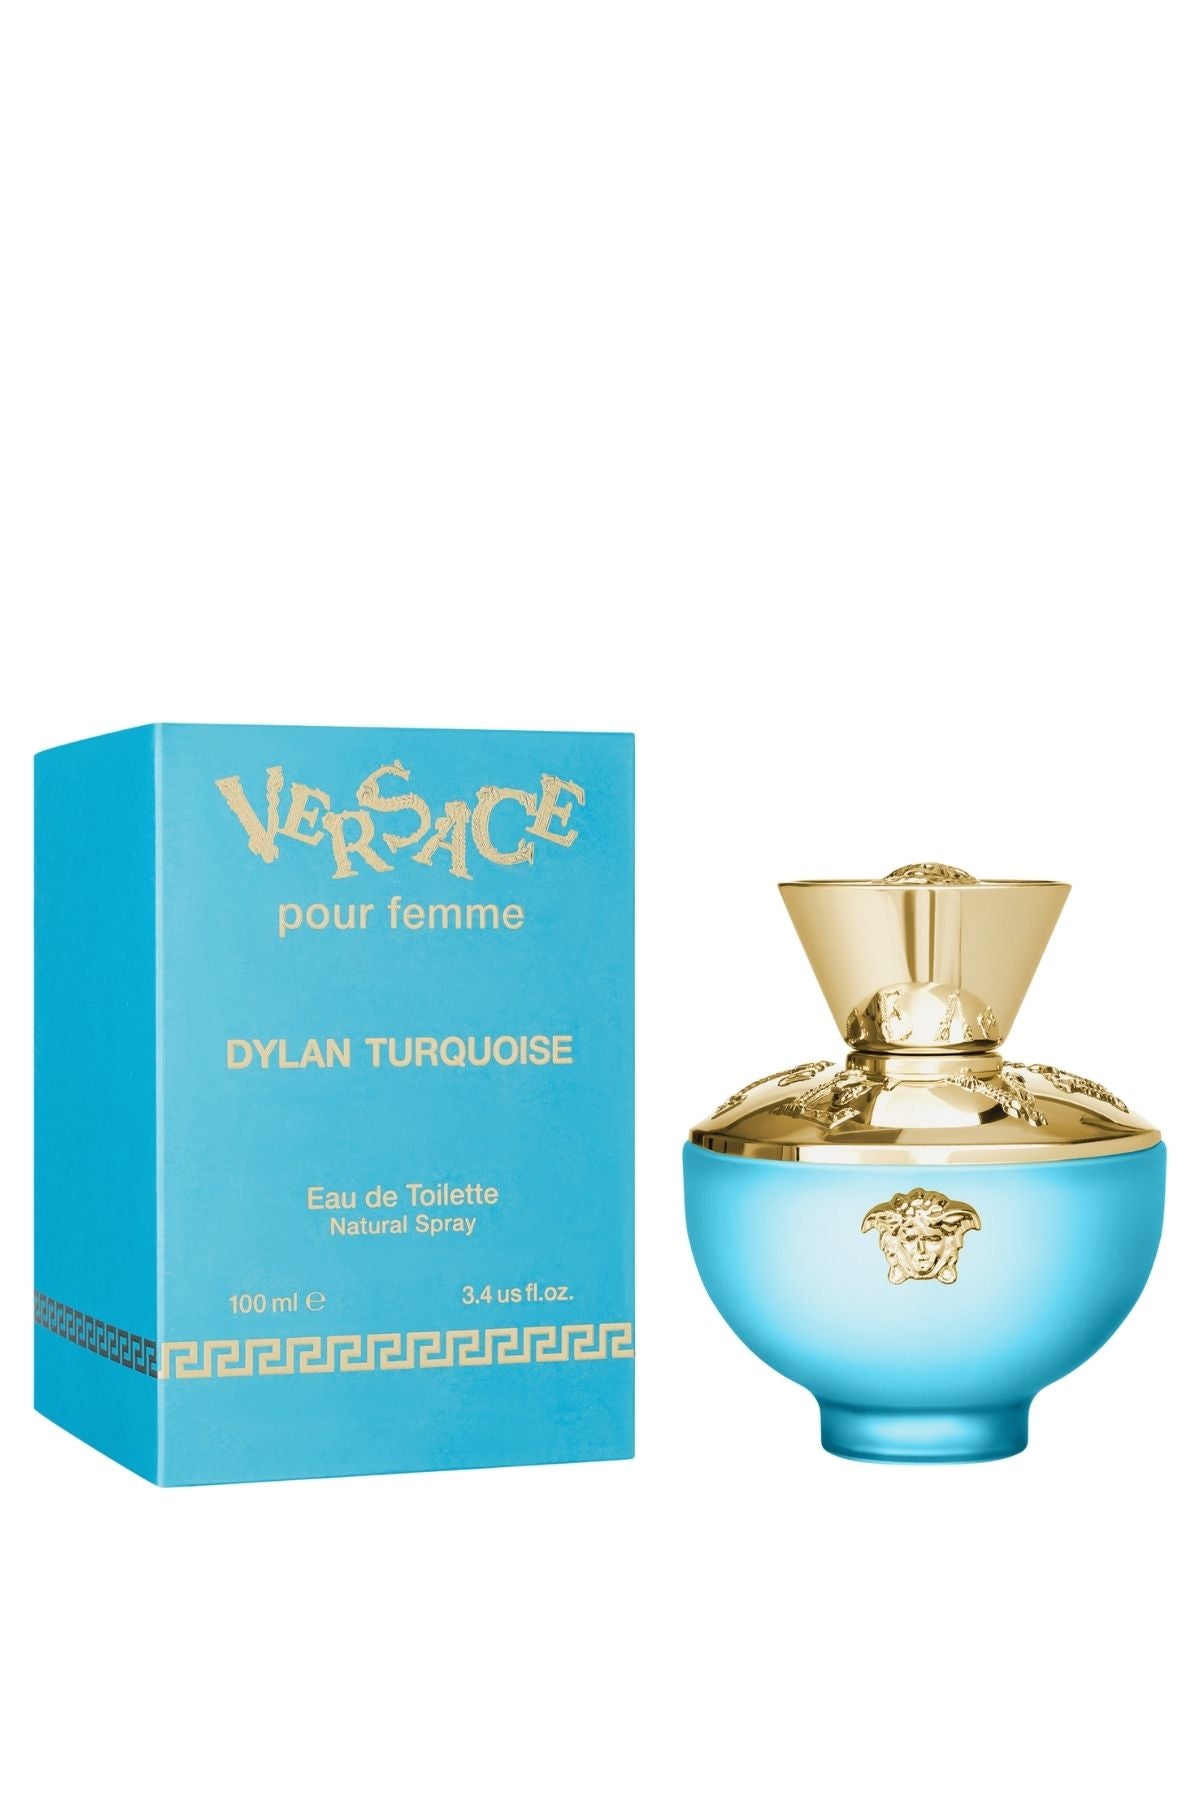 de Toilette REBL | Versace Dylan - Turquoise Eau